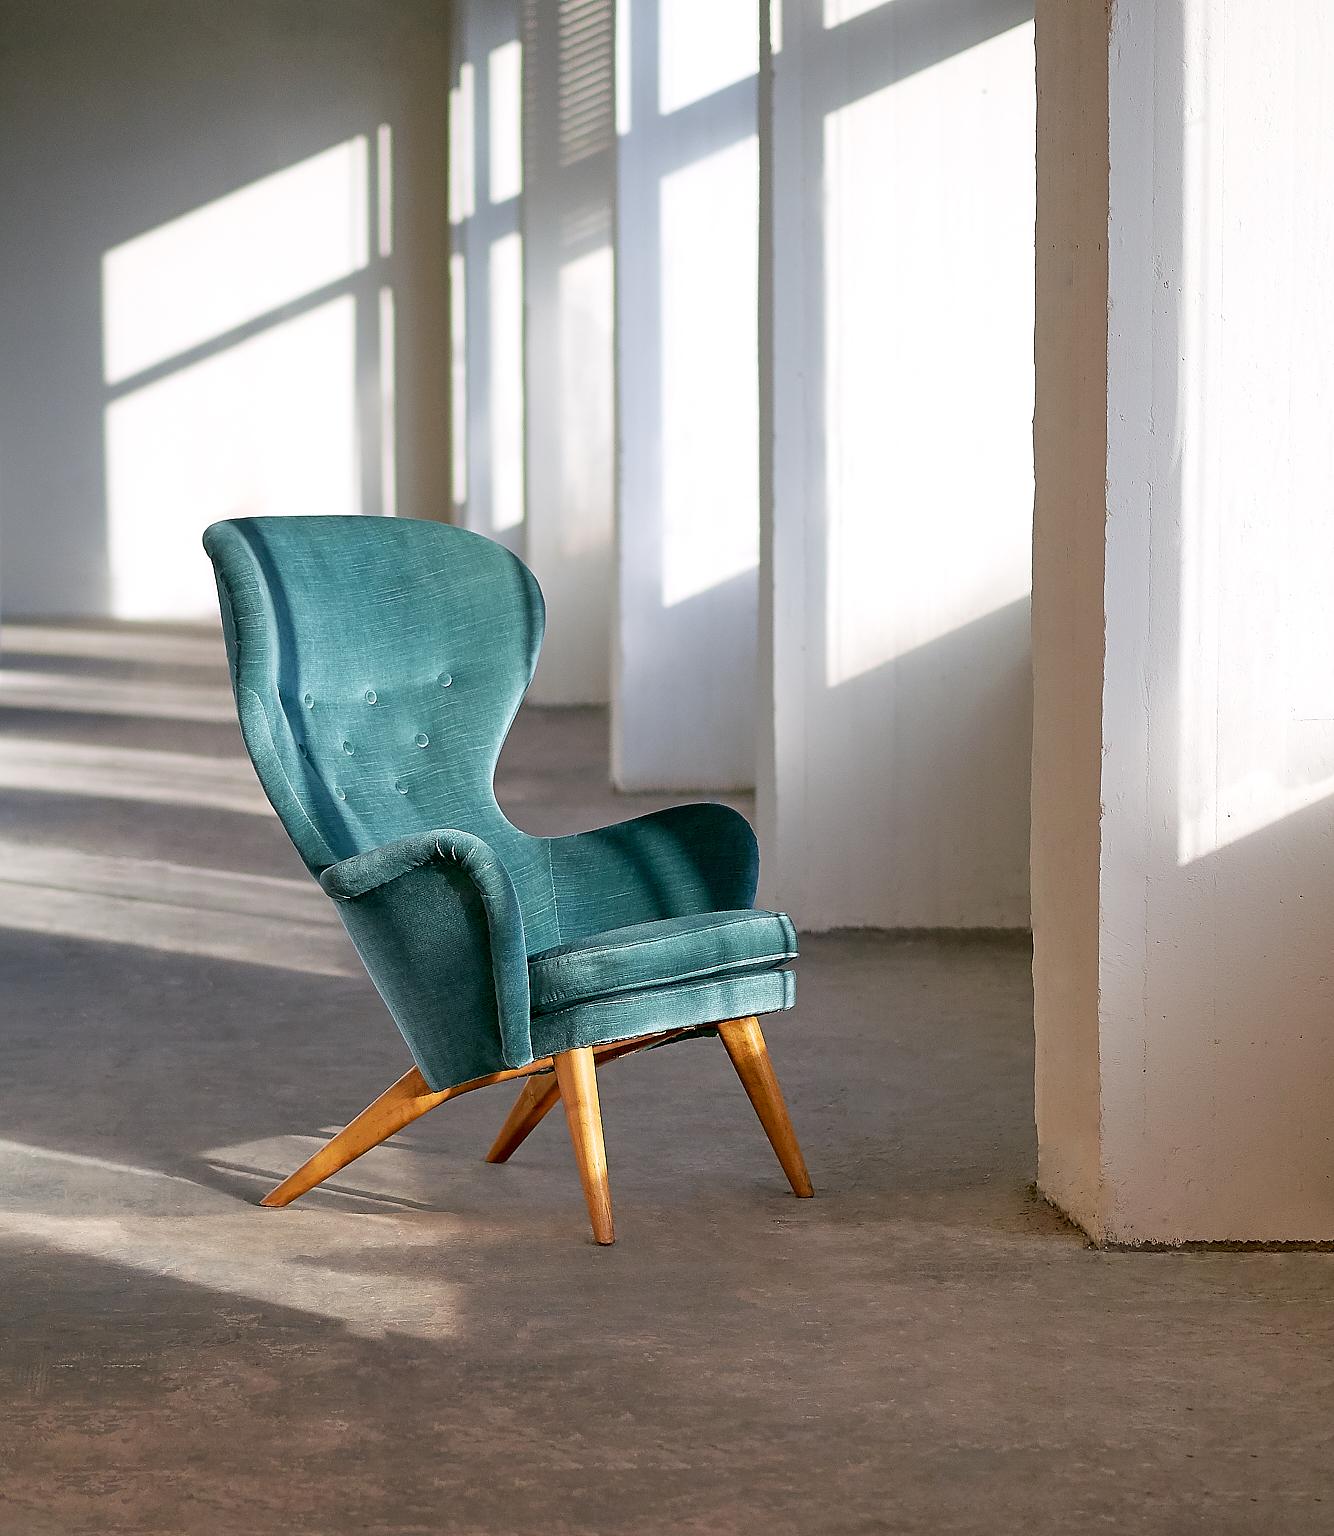 Dieser seltene Sessel wurde von Carl-Gustav Hiort Af Ornäs entworfen und 1952 von seiner eigenen Firma Hiort Tuote Puunveisto hergestellt. Dieses Modell wurde Siesta genannt und ist der berühmteste Entwurf des finnischen Designers. Mit seinen nach